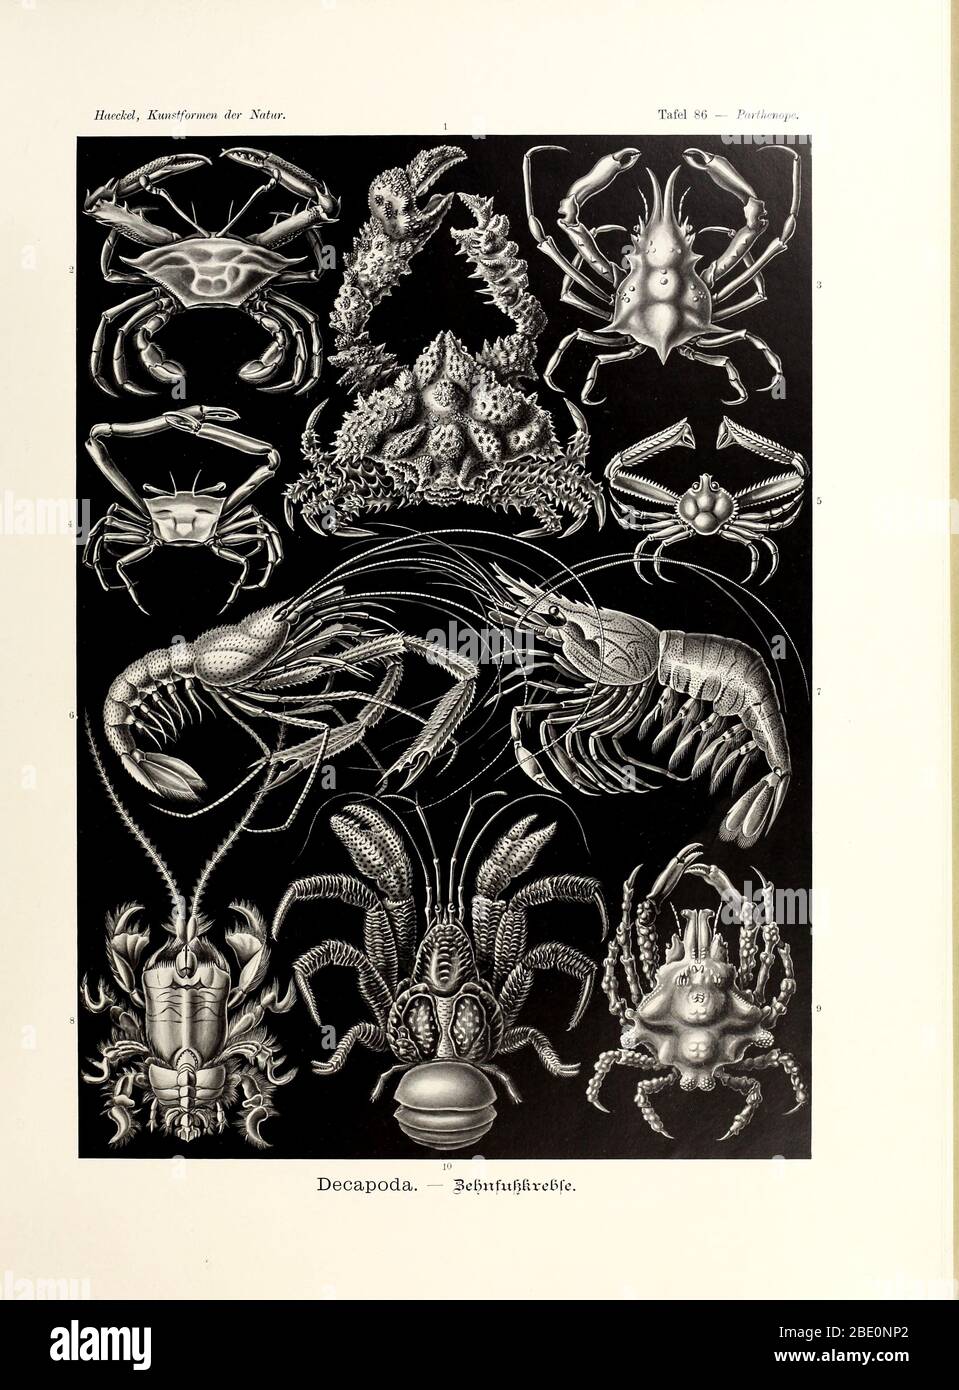 Dekapoda oder Dekapoden aus Ernst Haeckels Kunstformen der Natur, 1904. Krebse, Krebse, Hummer, Garnelen und Garnelen Stockfoto